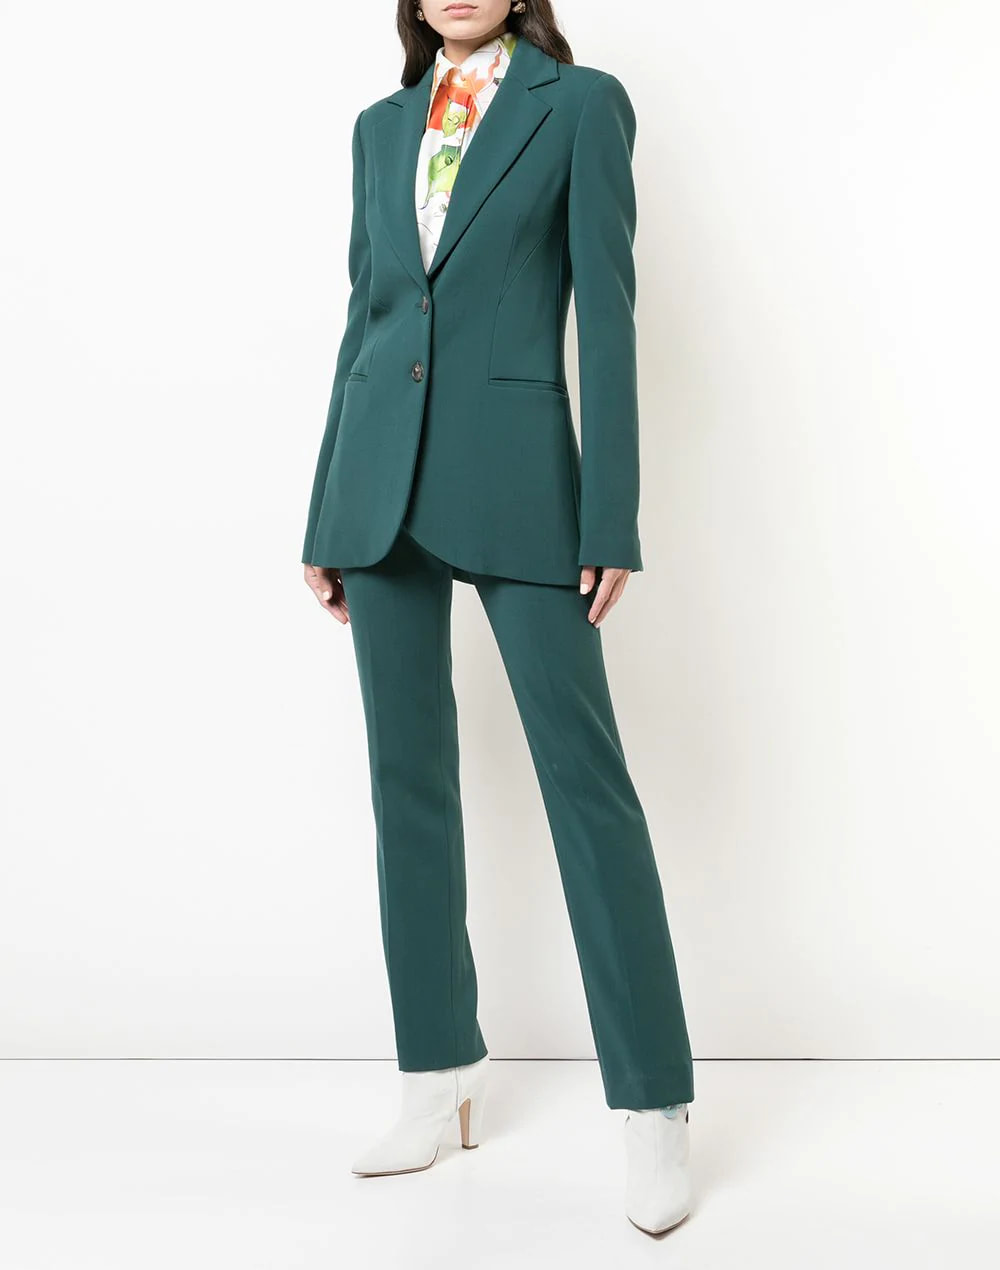 Carolina Herrera wool-blend longline suit jacket & wool-blend trousers in evergreen